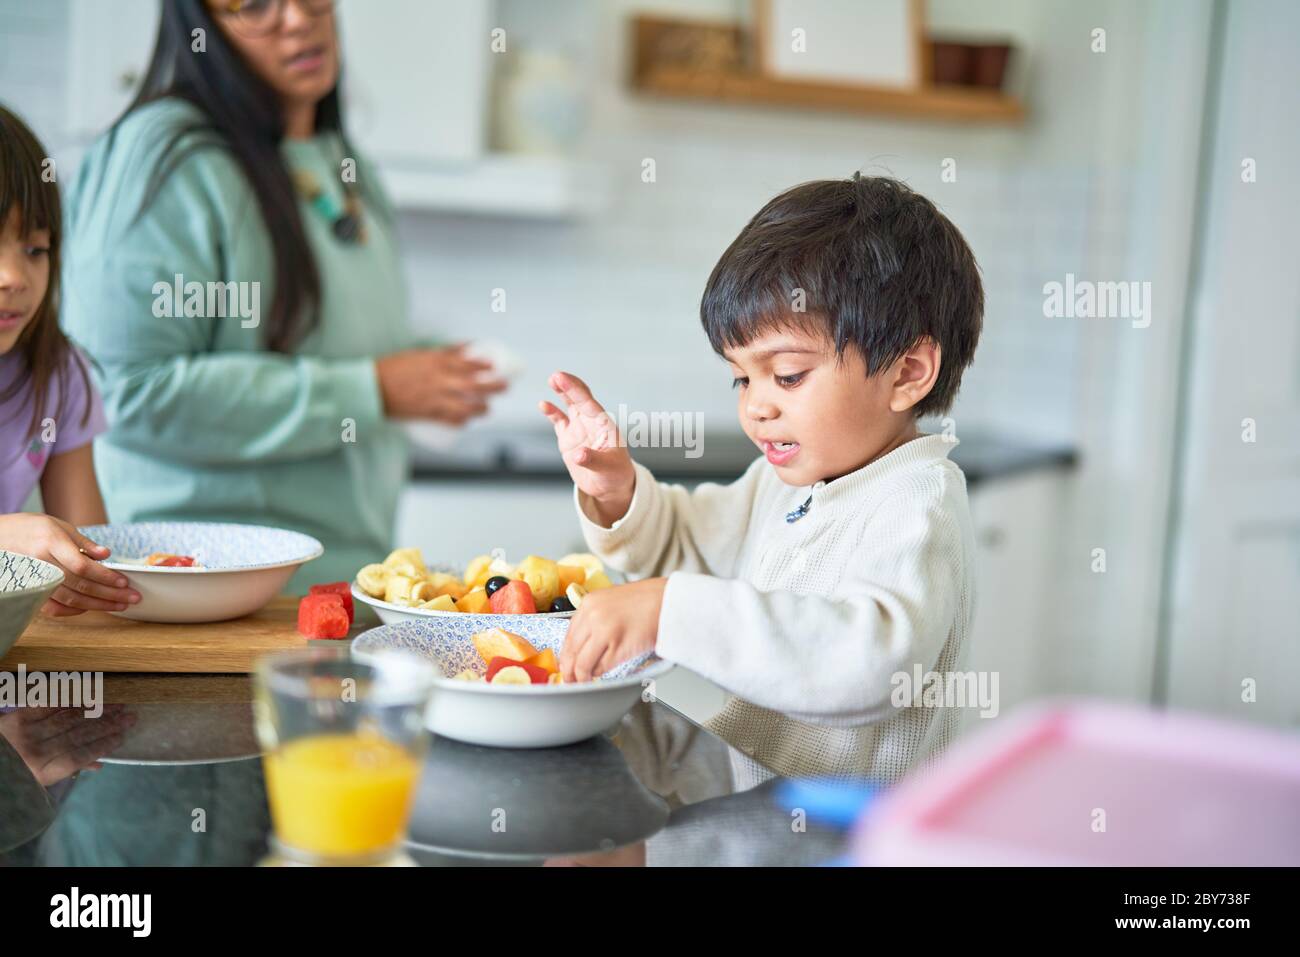 Lindo chico comiendo fruta fresca en la cocina Foto de stock